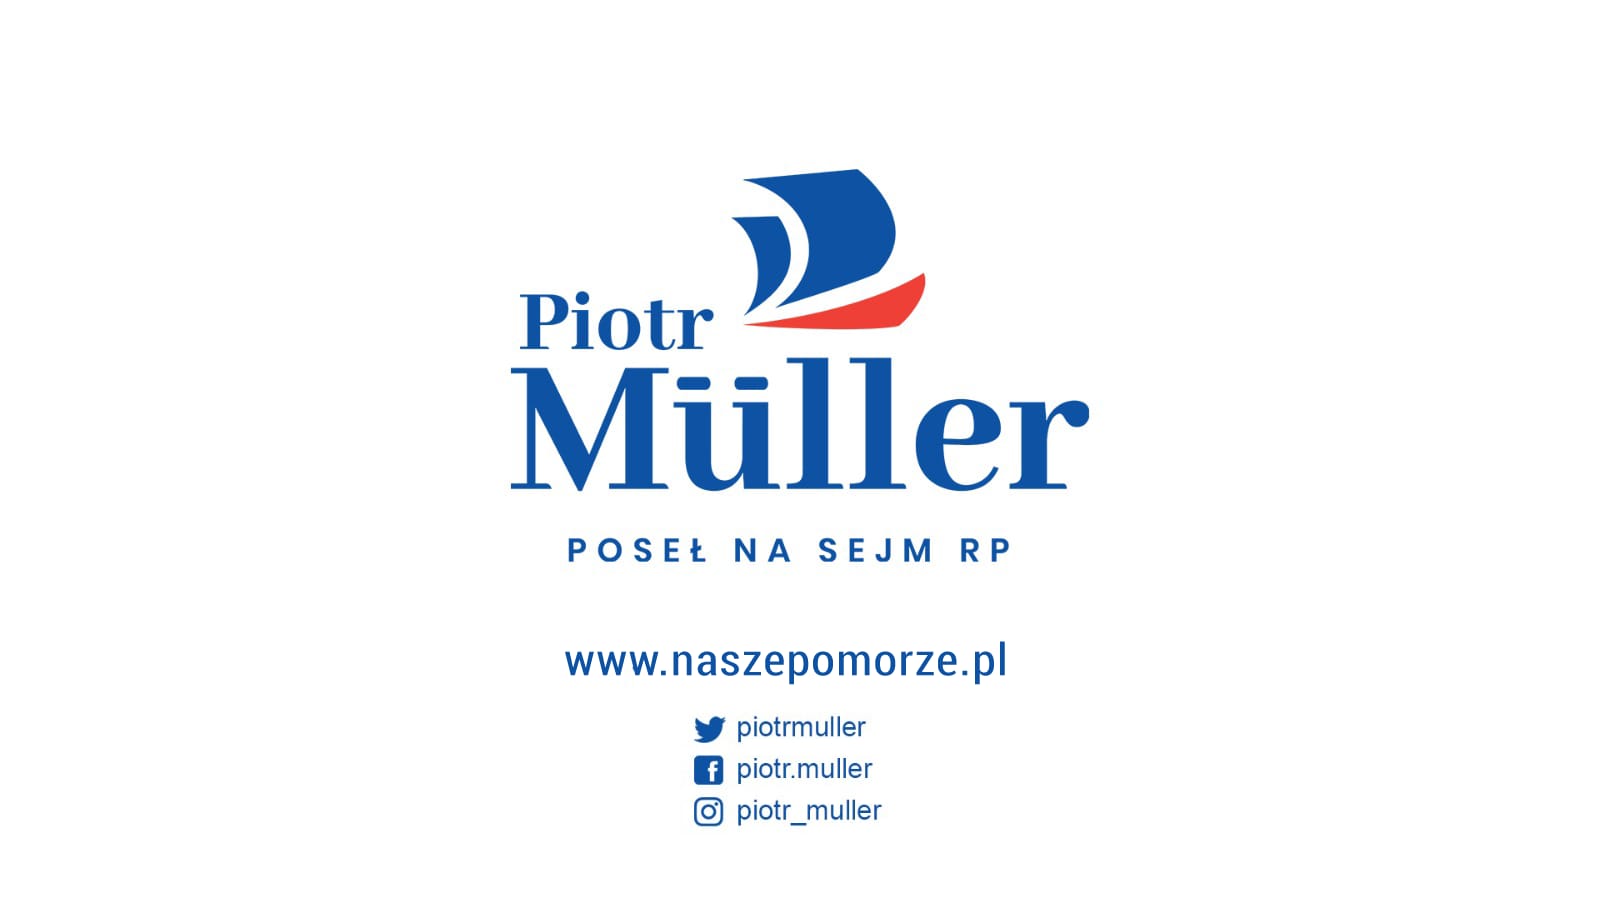 Nasze Pomorze tym hasłem chcielibyśmy zaprezentować Państwu sprawozdanie z nieco ponad 2 lat działalności poselskiej Piotra Müllera na rzecz regionu.